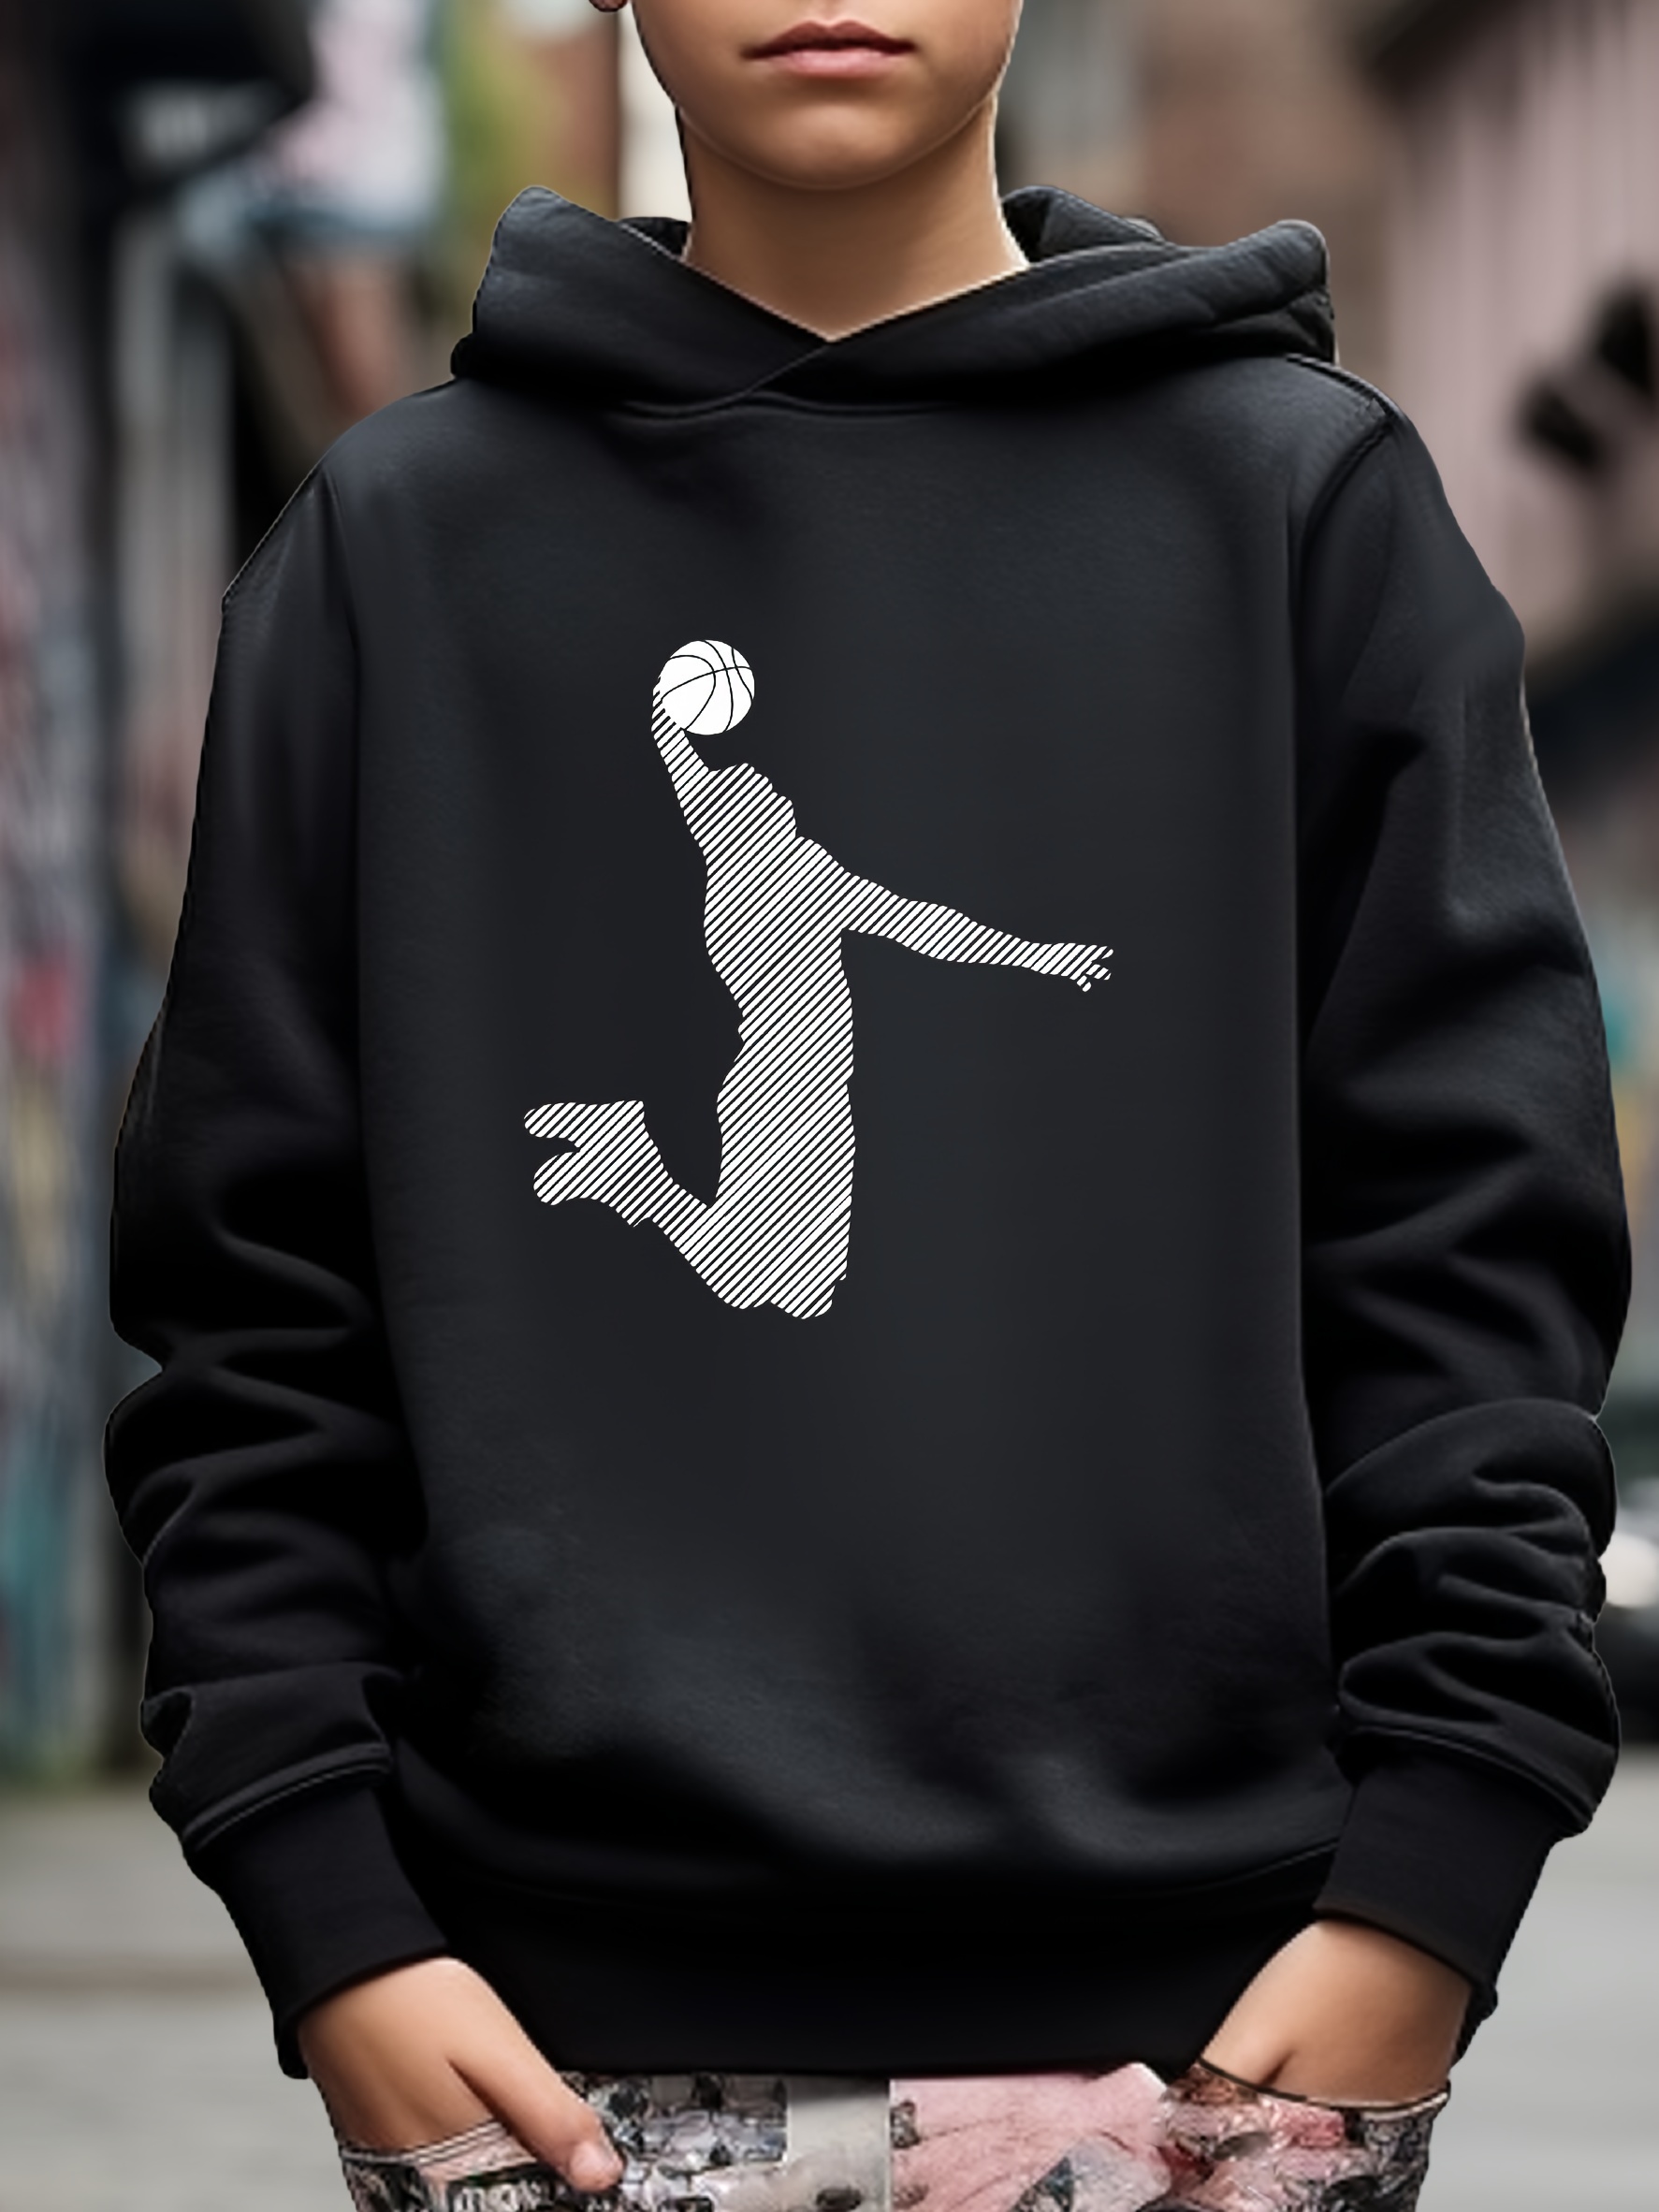 Sudadera Air Jordan con capucha para niños - baloncesto